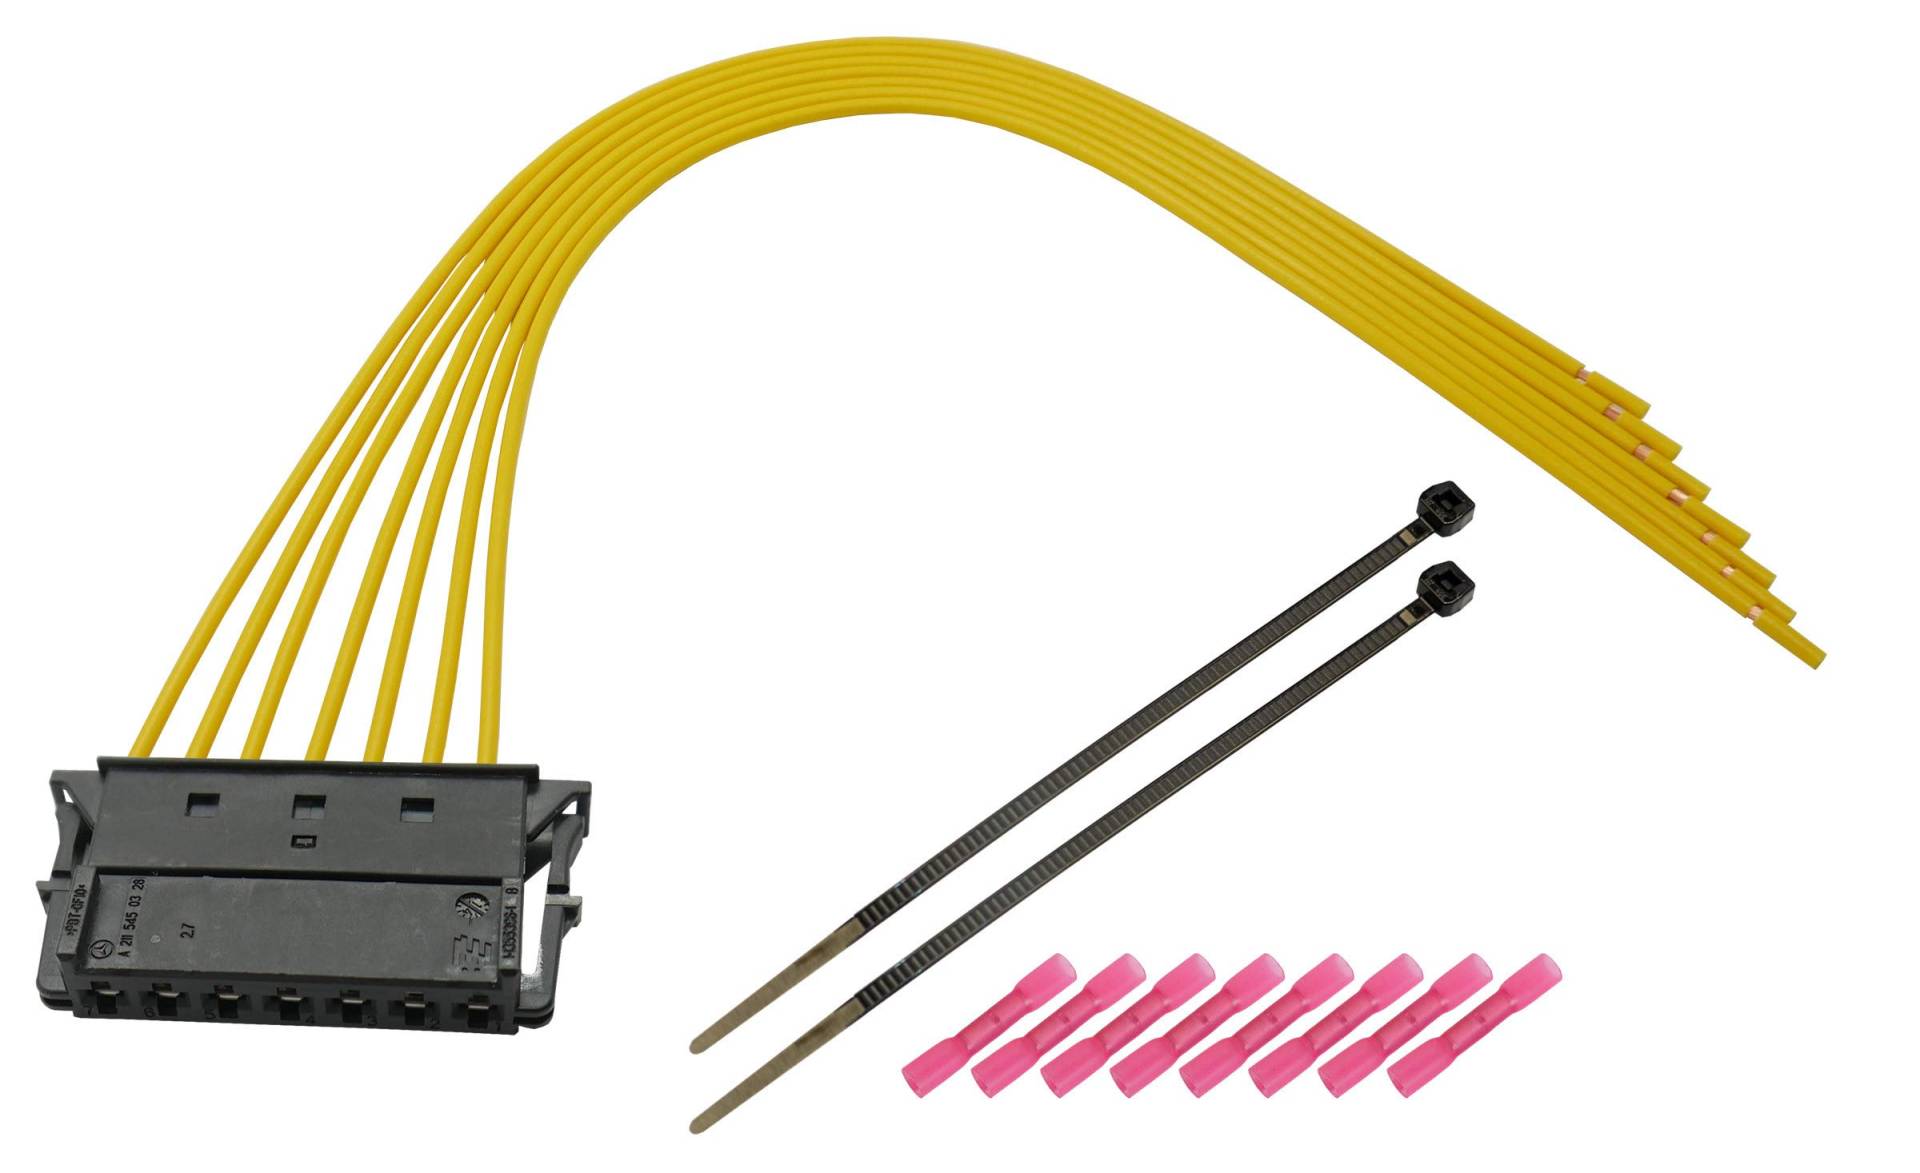 Kabelsatz für Rückleuchte Heckleuchte kompatibel mit Mercedes C-Klasse W203 W204 E-Klasse W211 von Cable Solution